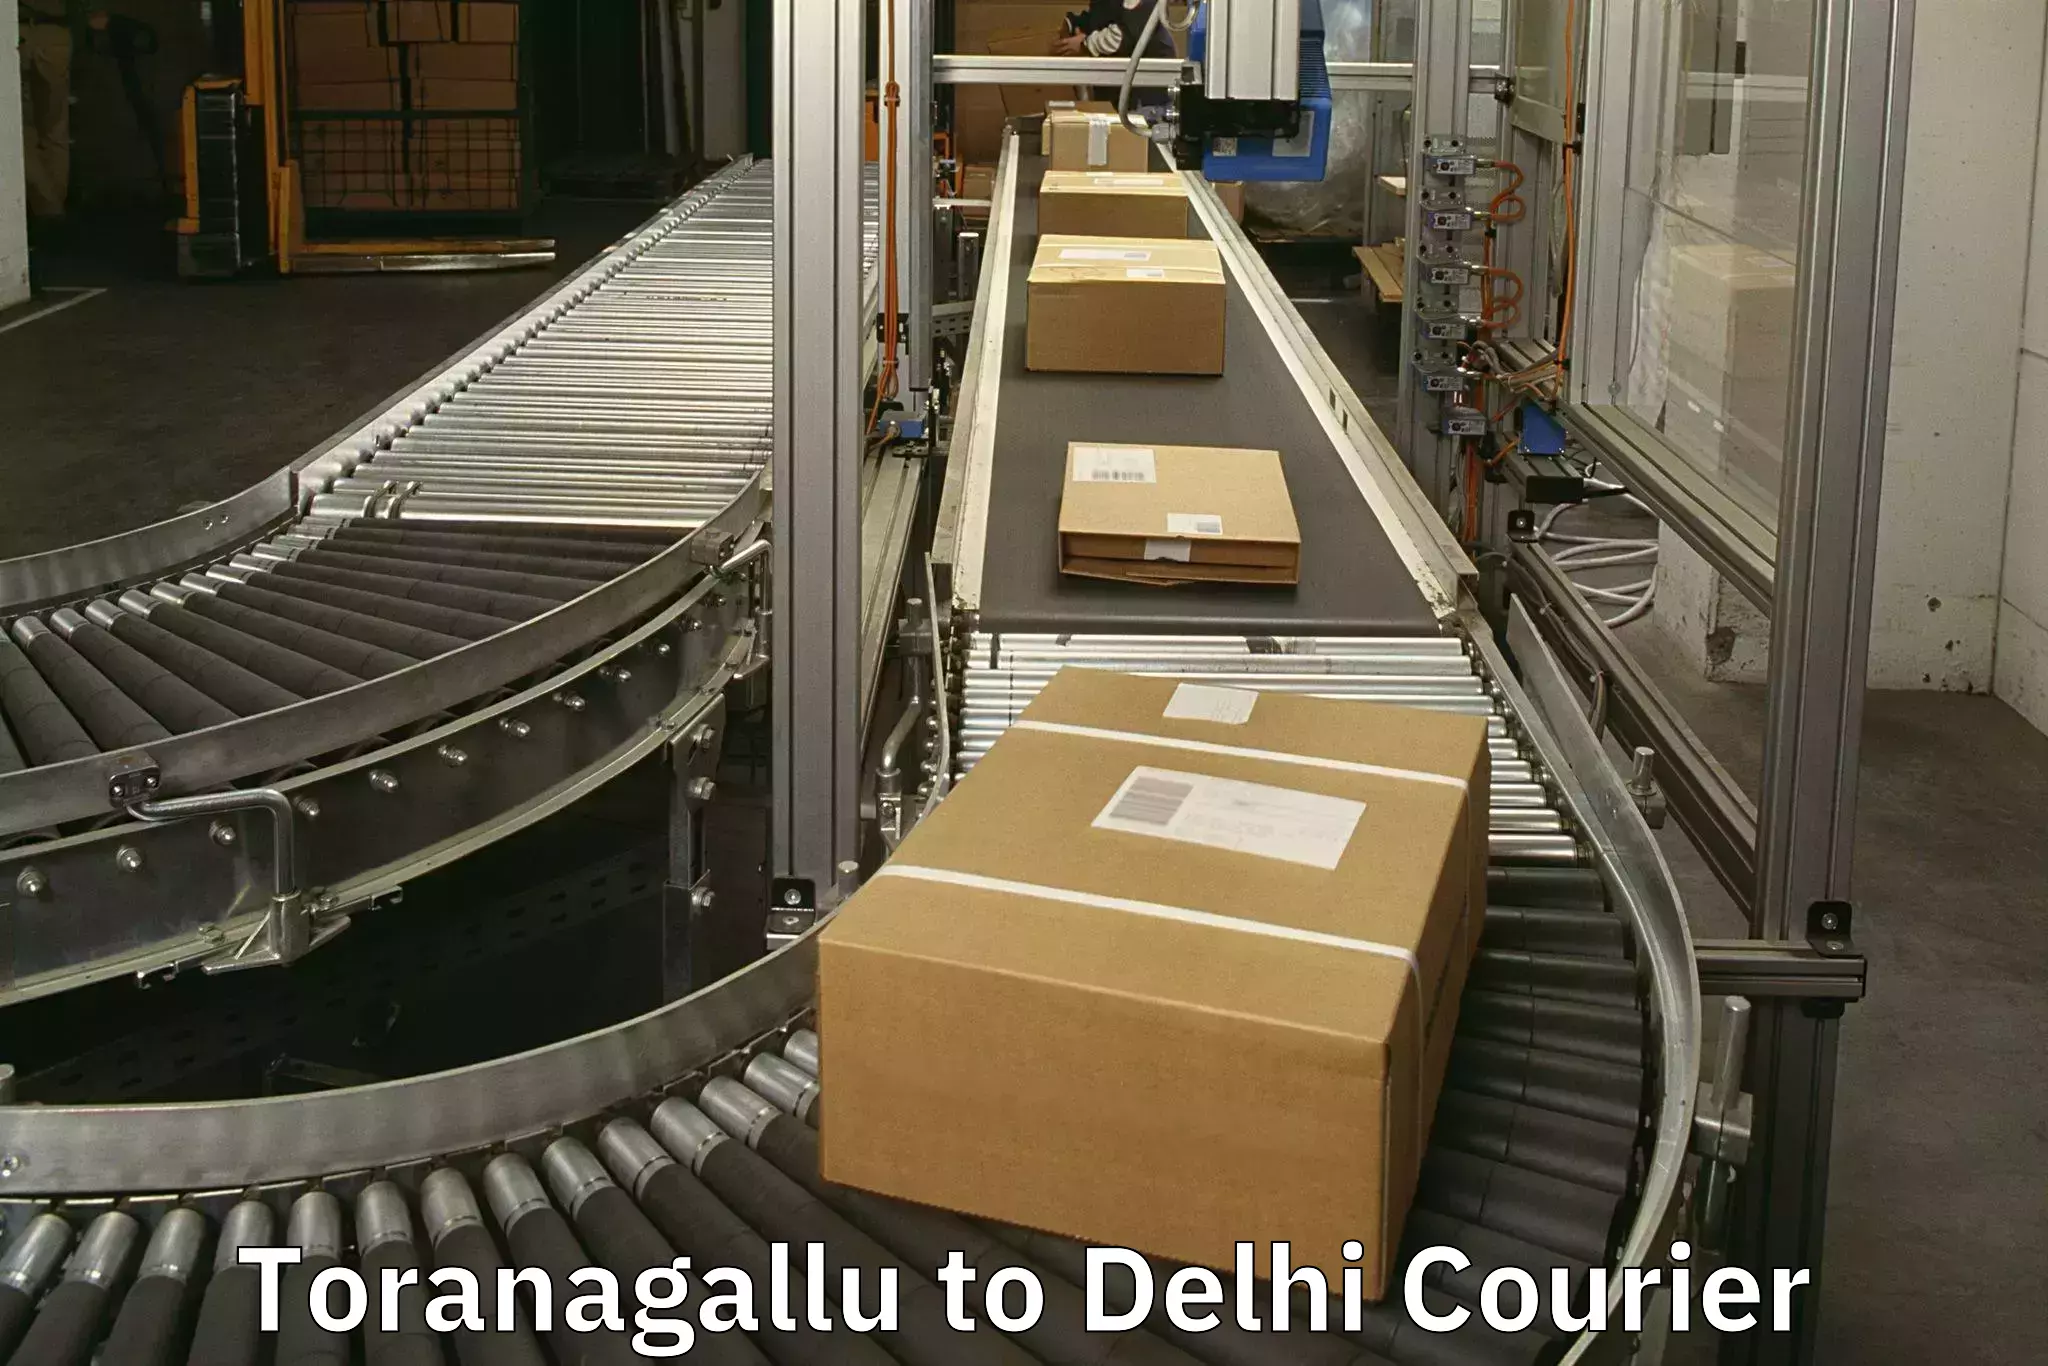 Luggage delivery app Toranagallu to Delhi